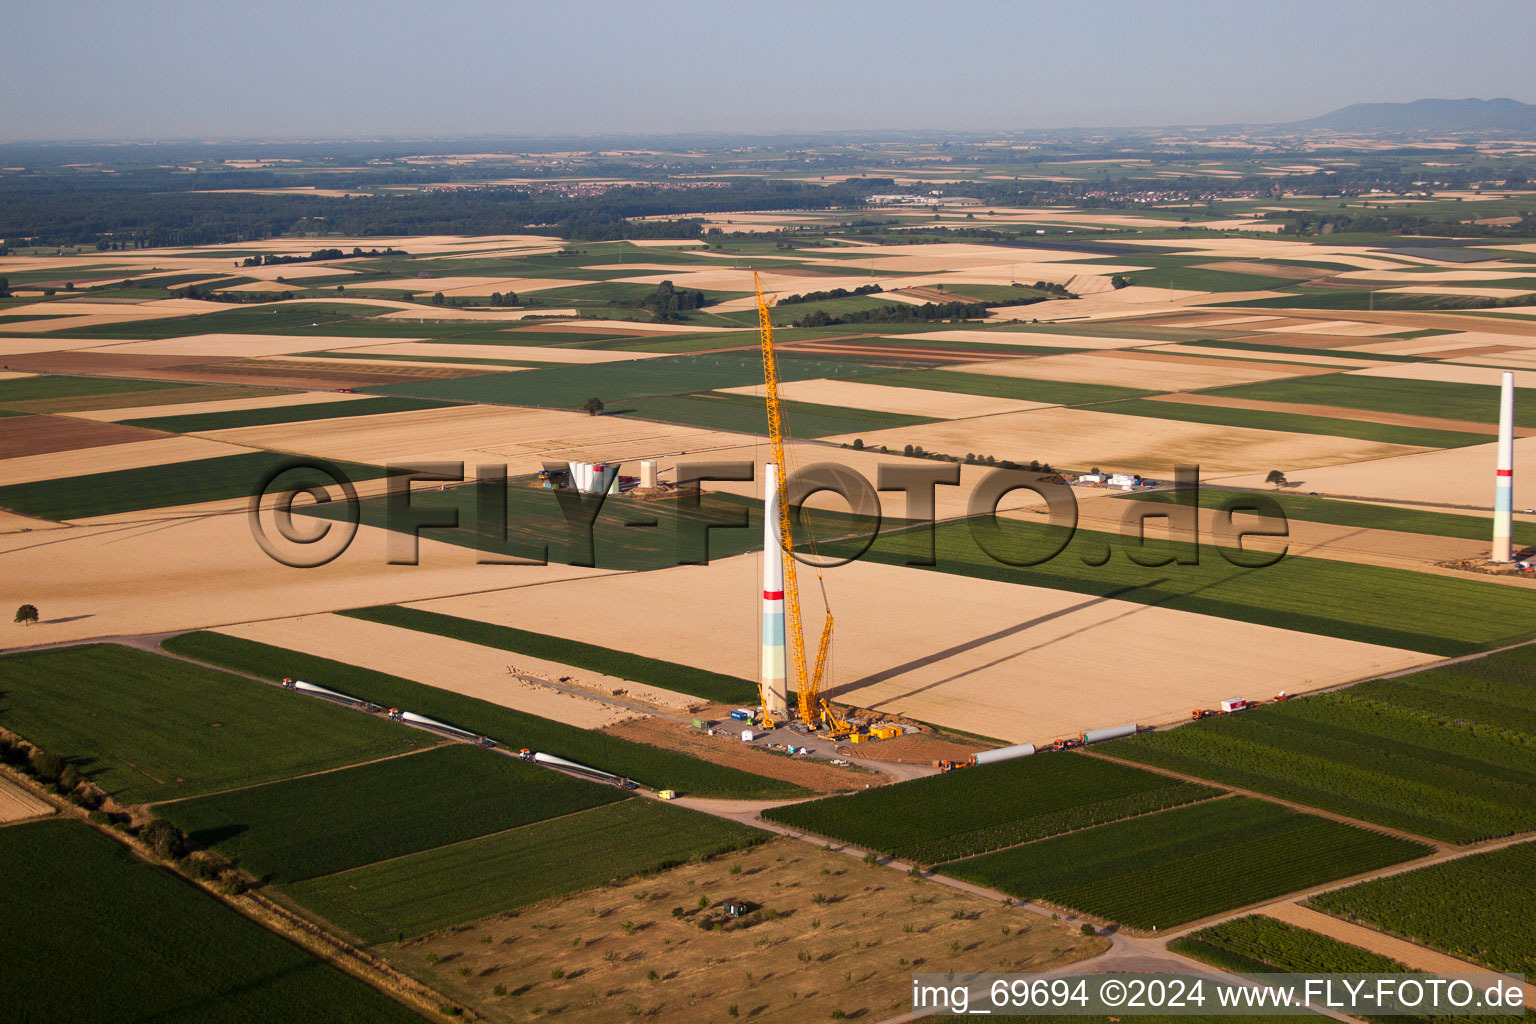 Windparkbau in Offenbach an der Queich im Bundesland Rheinland-Pfalz, Deutschland aus der Luft betrachtet